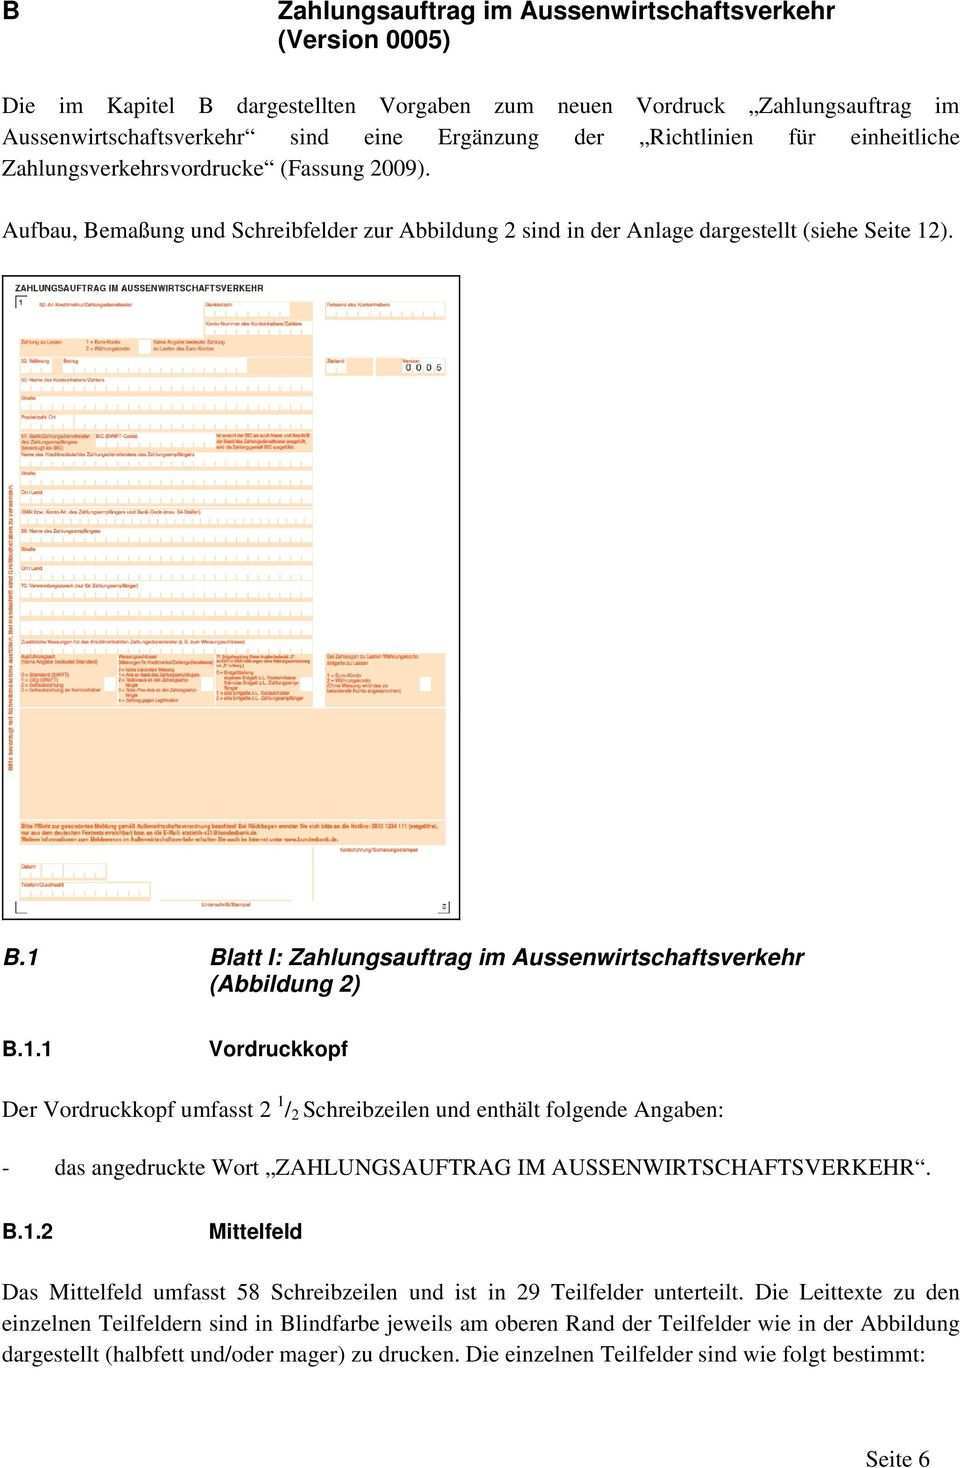 Merkblatt 2013 Aktualisierung Zu Den Richtlinien Fur Einheitliche Zahlungsverkehrsvordrucke 2009 Pdf Kostenfreier Download